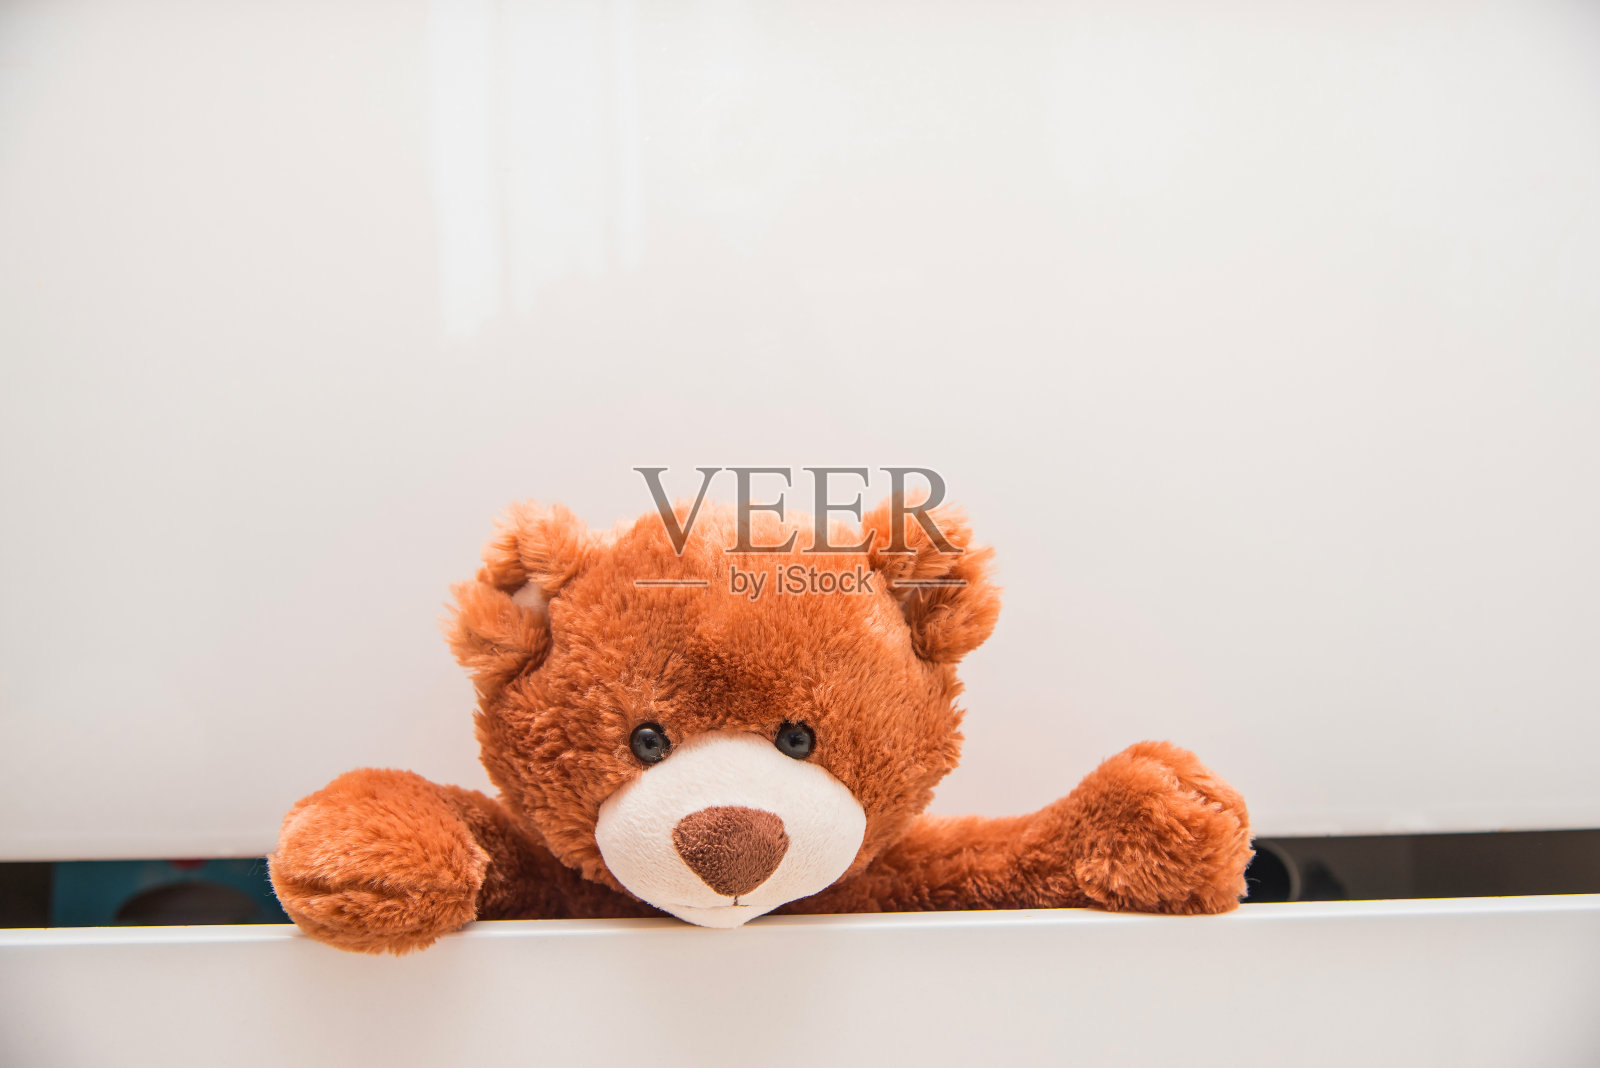 棕色毛绒玩具泰迪熊从白色抽屉的衣柜里爬出来照片摄影图片